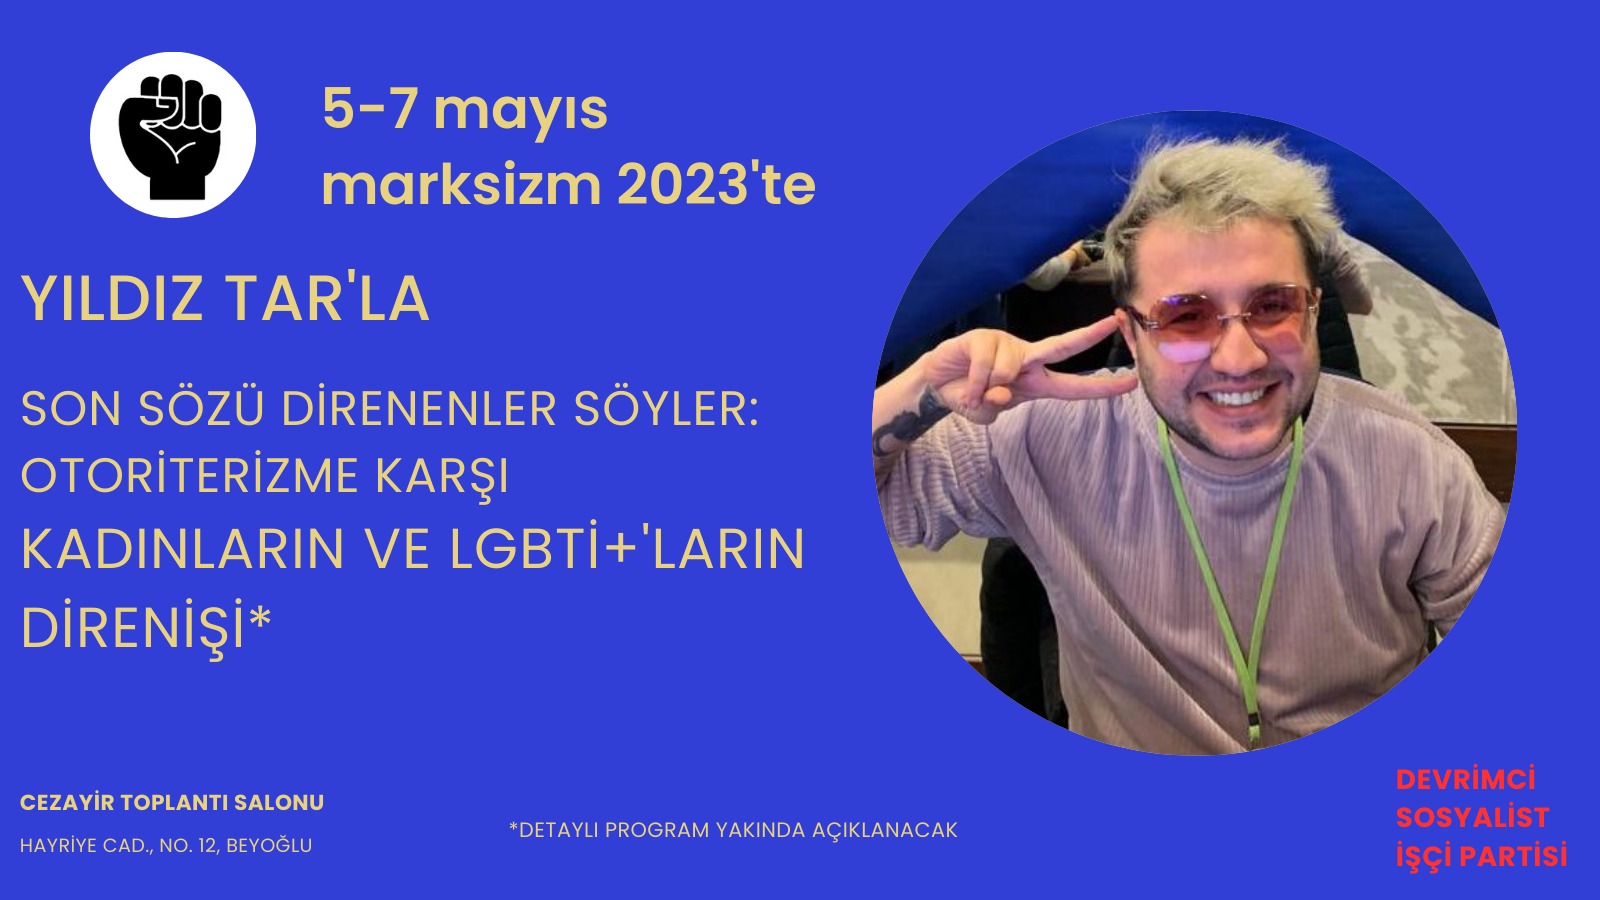 Marksizm toplantıları 5-7 Mayıs’ta İstanbul’da | Kaos GL - LGBTİ+ Haber Portalı Haber